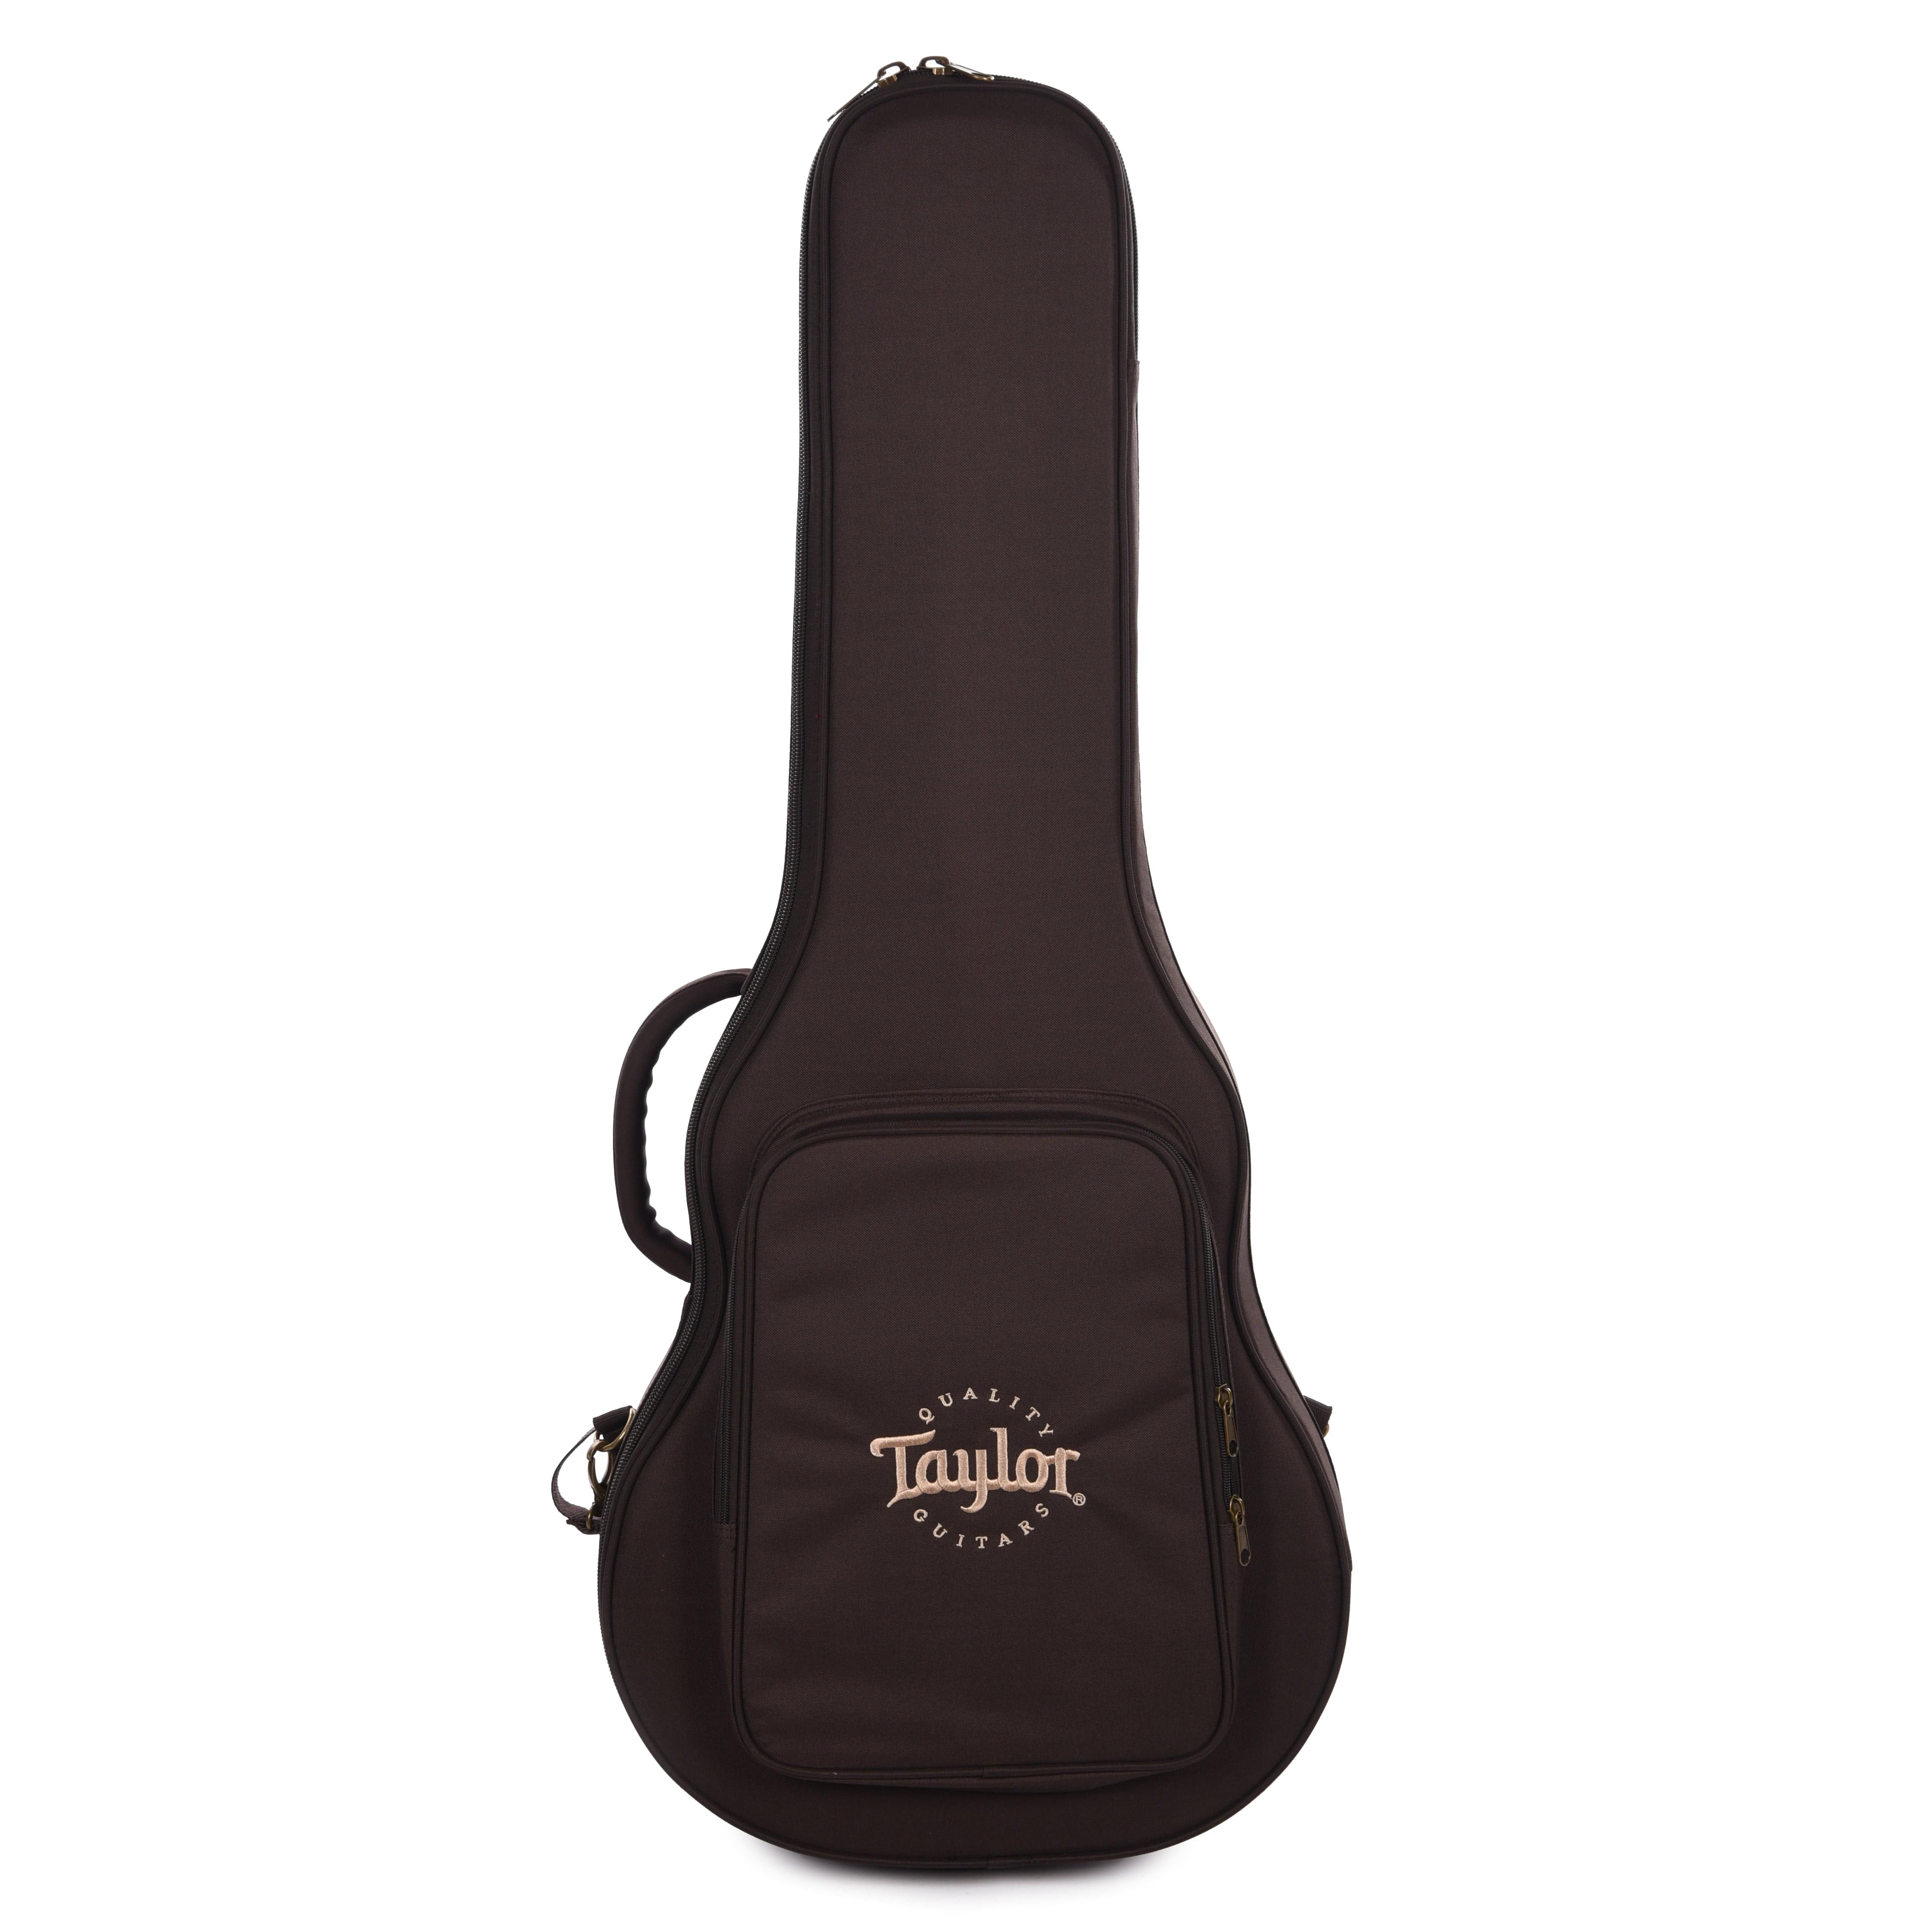 Taylor GT 611e Limited Sitka/Big Leaf Maple Antique Blonde ES2 Acoustic Guitars / OM and Auditorium